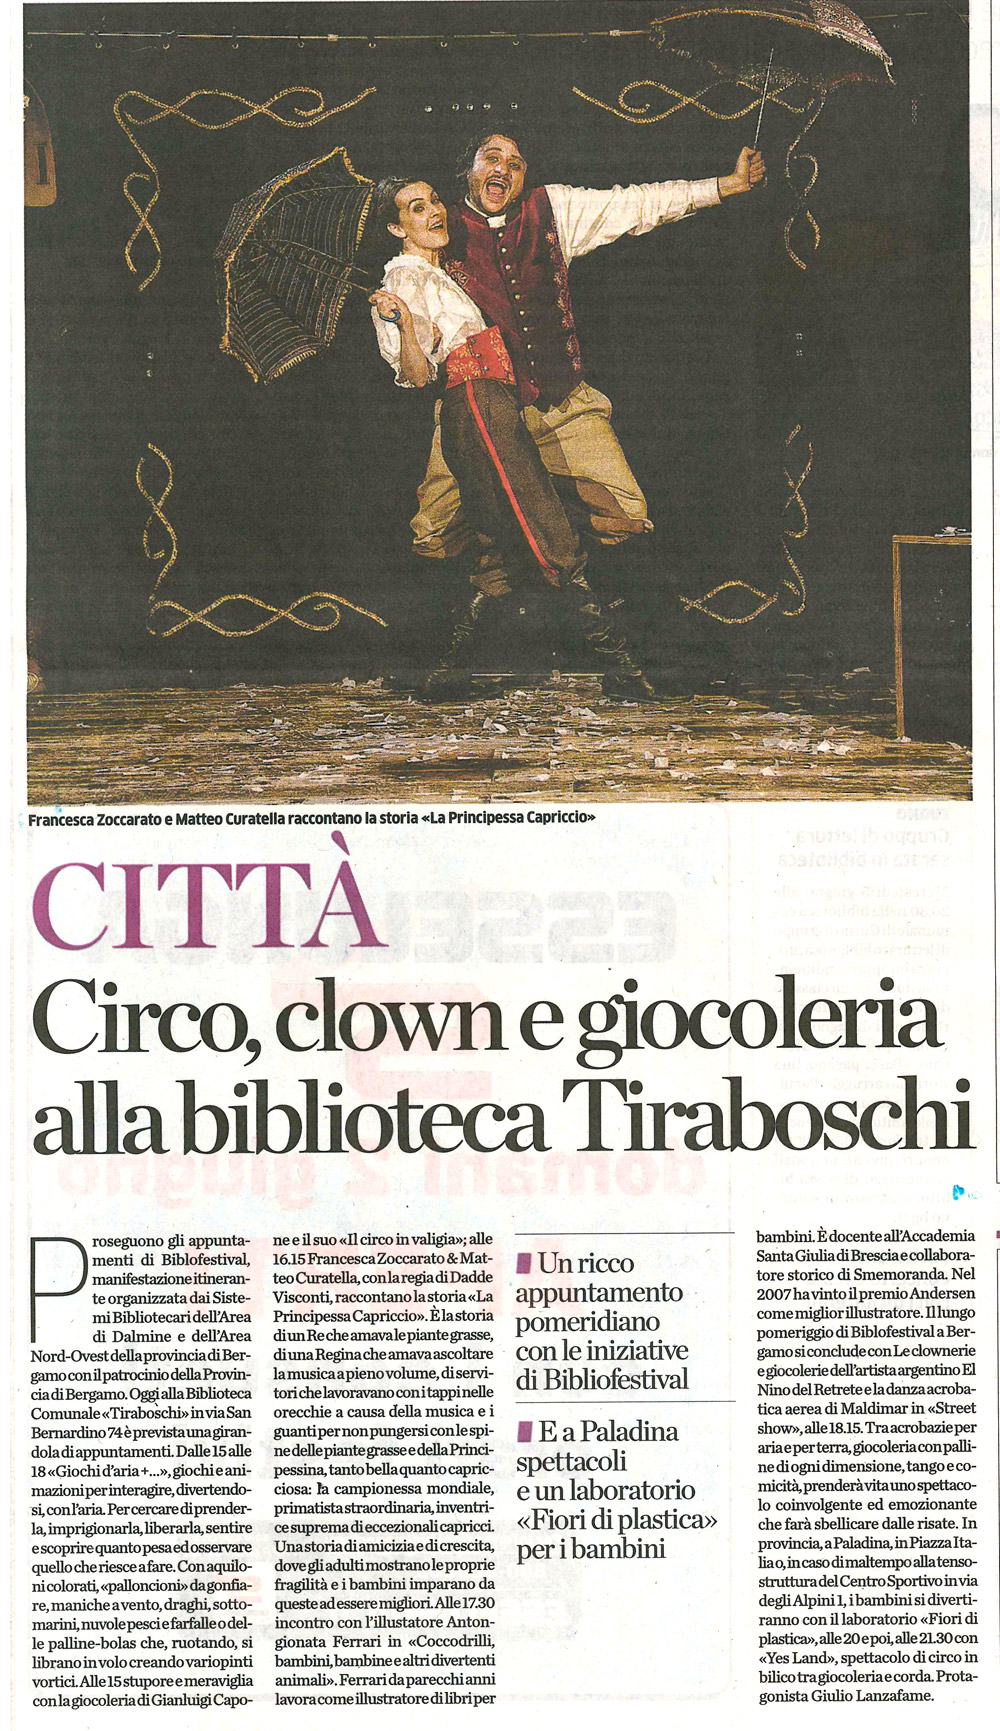 Eco di Bergamo 2 giugno - clown e giocoleria alla biblioteca Tiraboschi